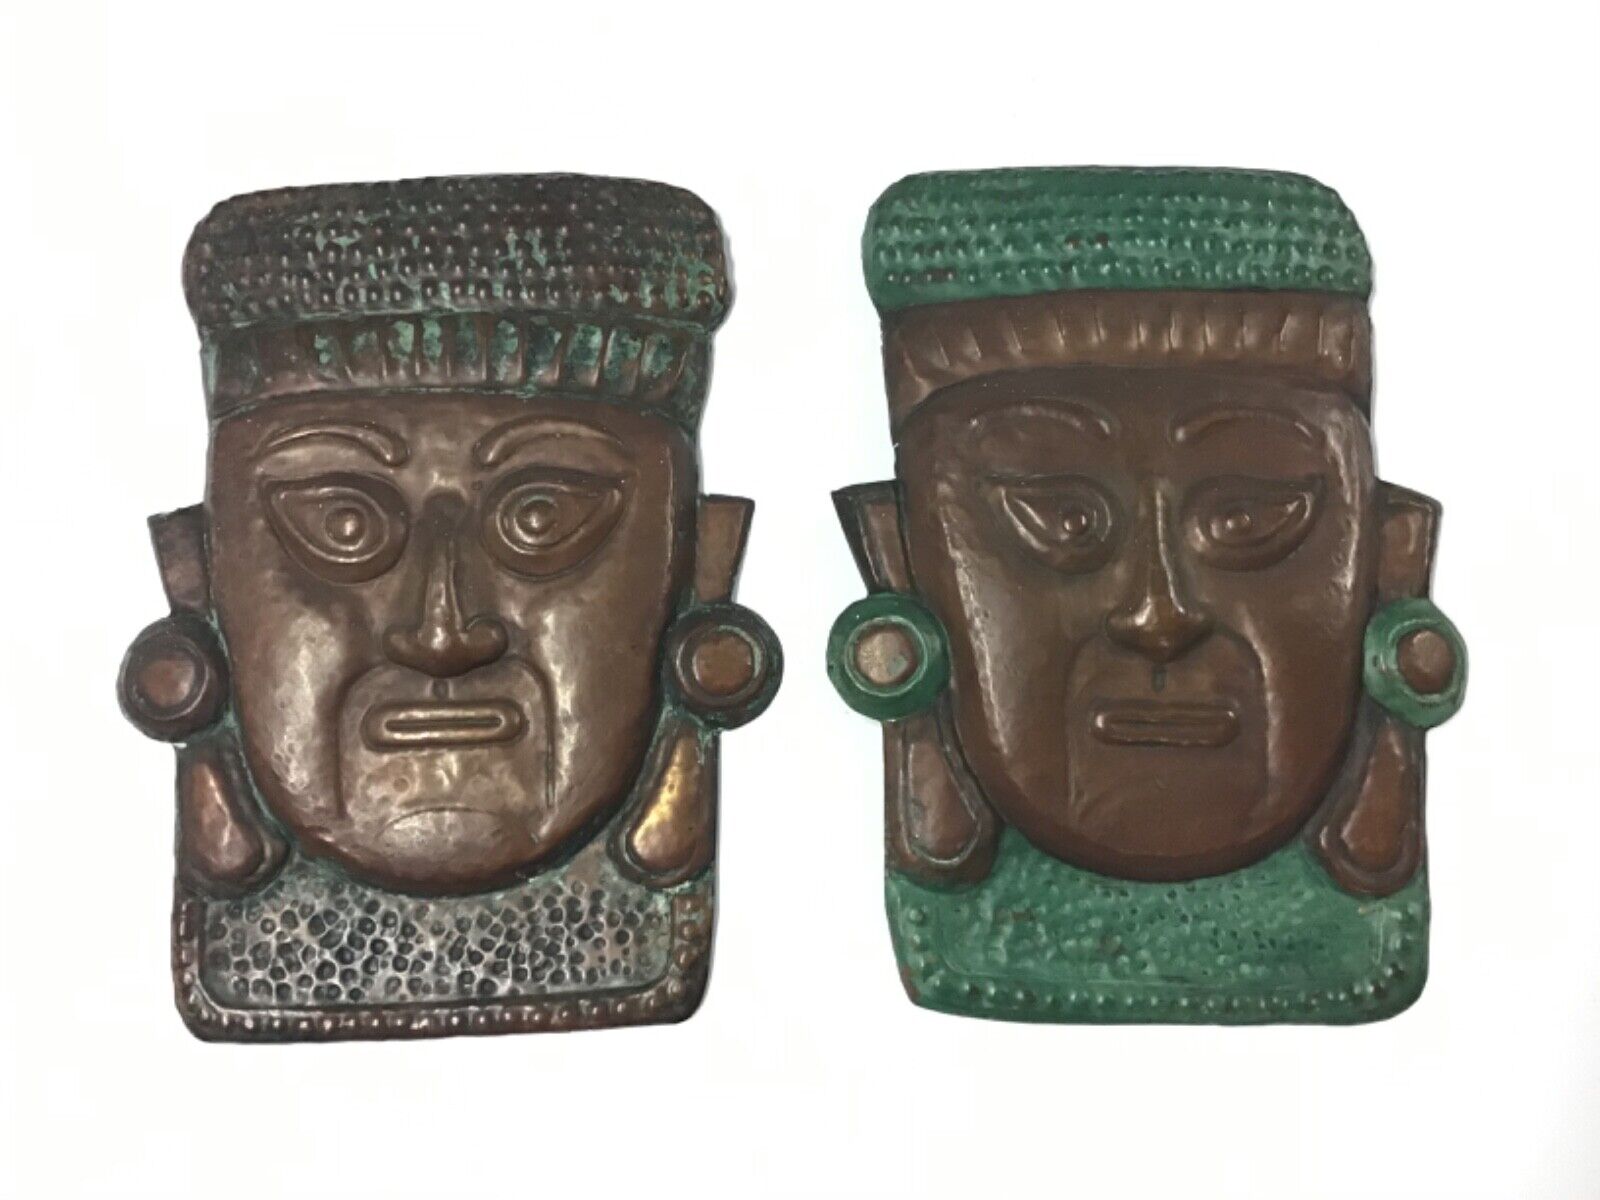 Antique/Vintage Aztec Hand Pounded & Painted Copper Faces